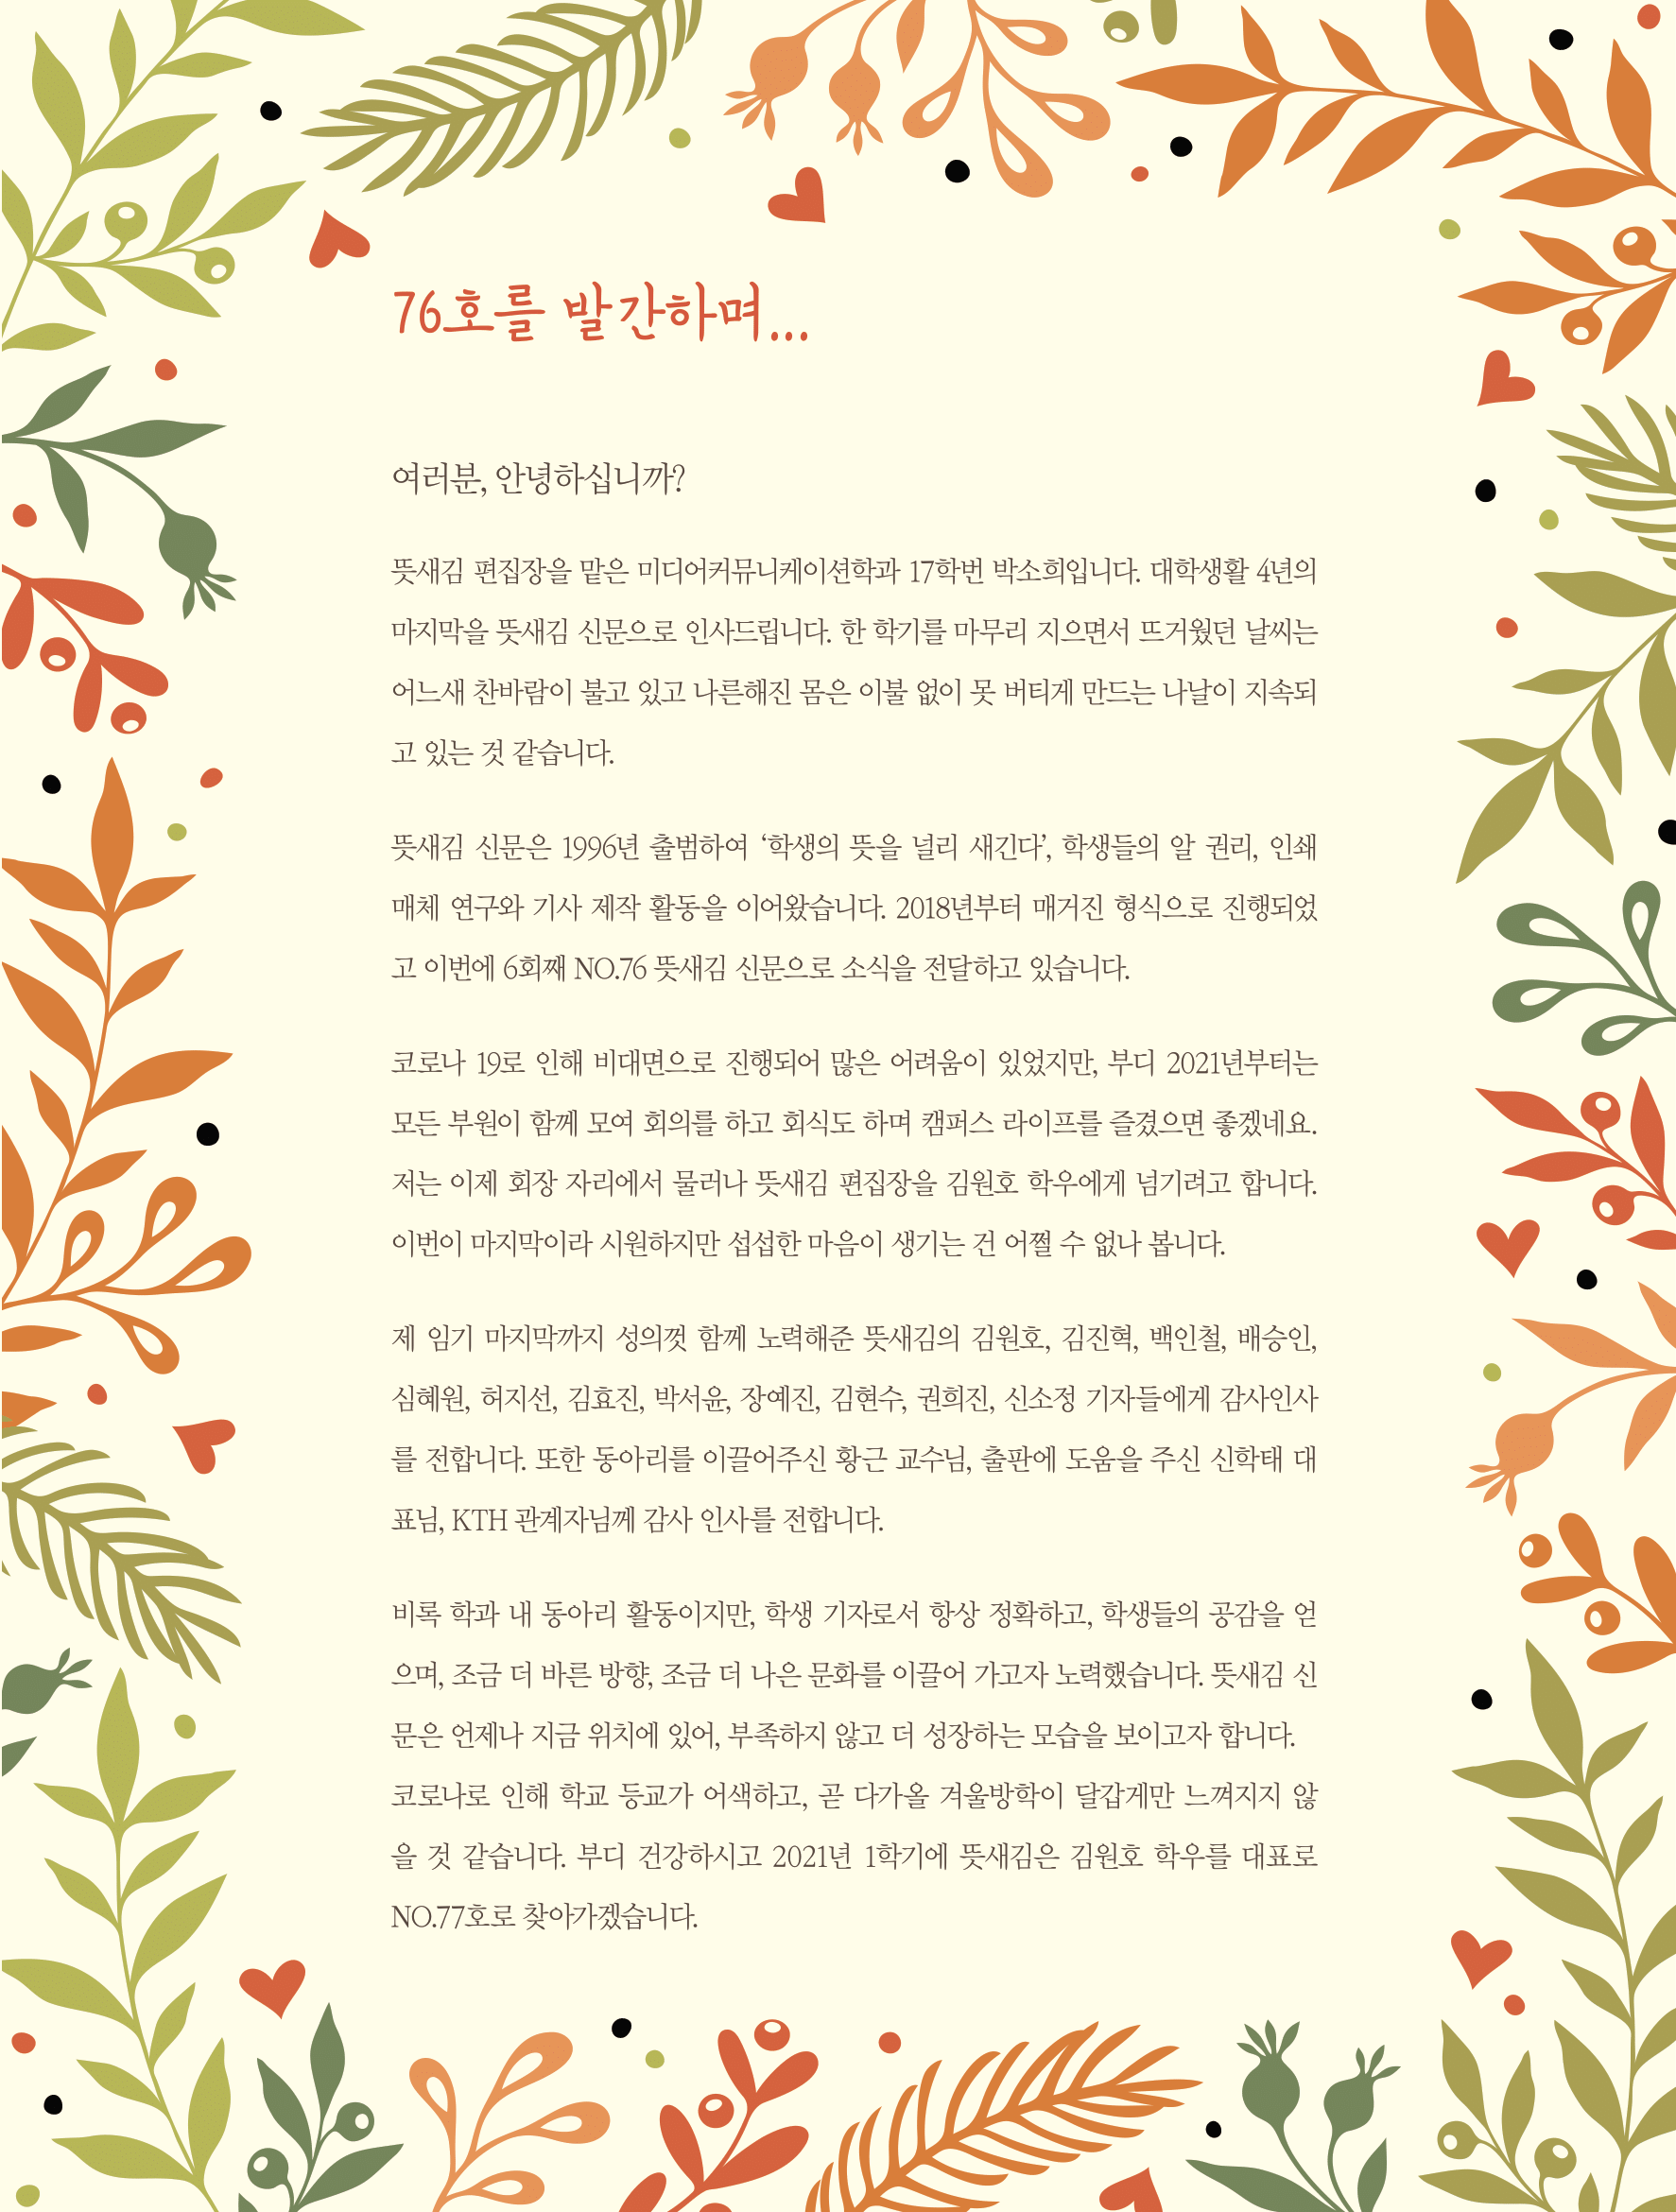 뜻새김 신문 76호 25